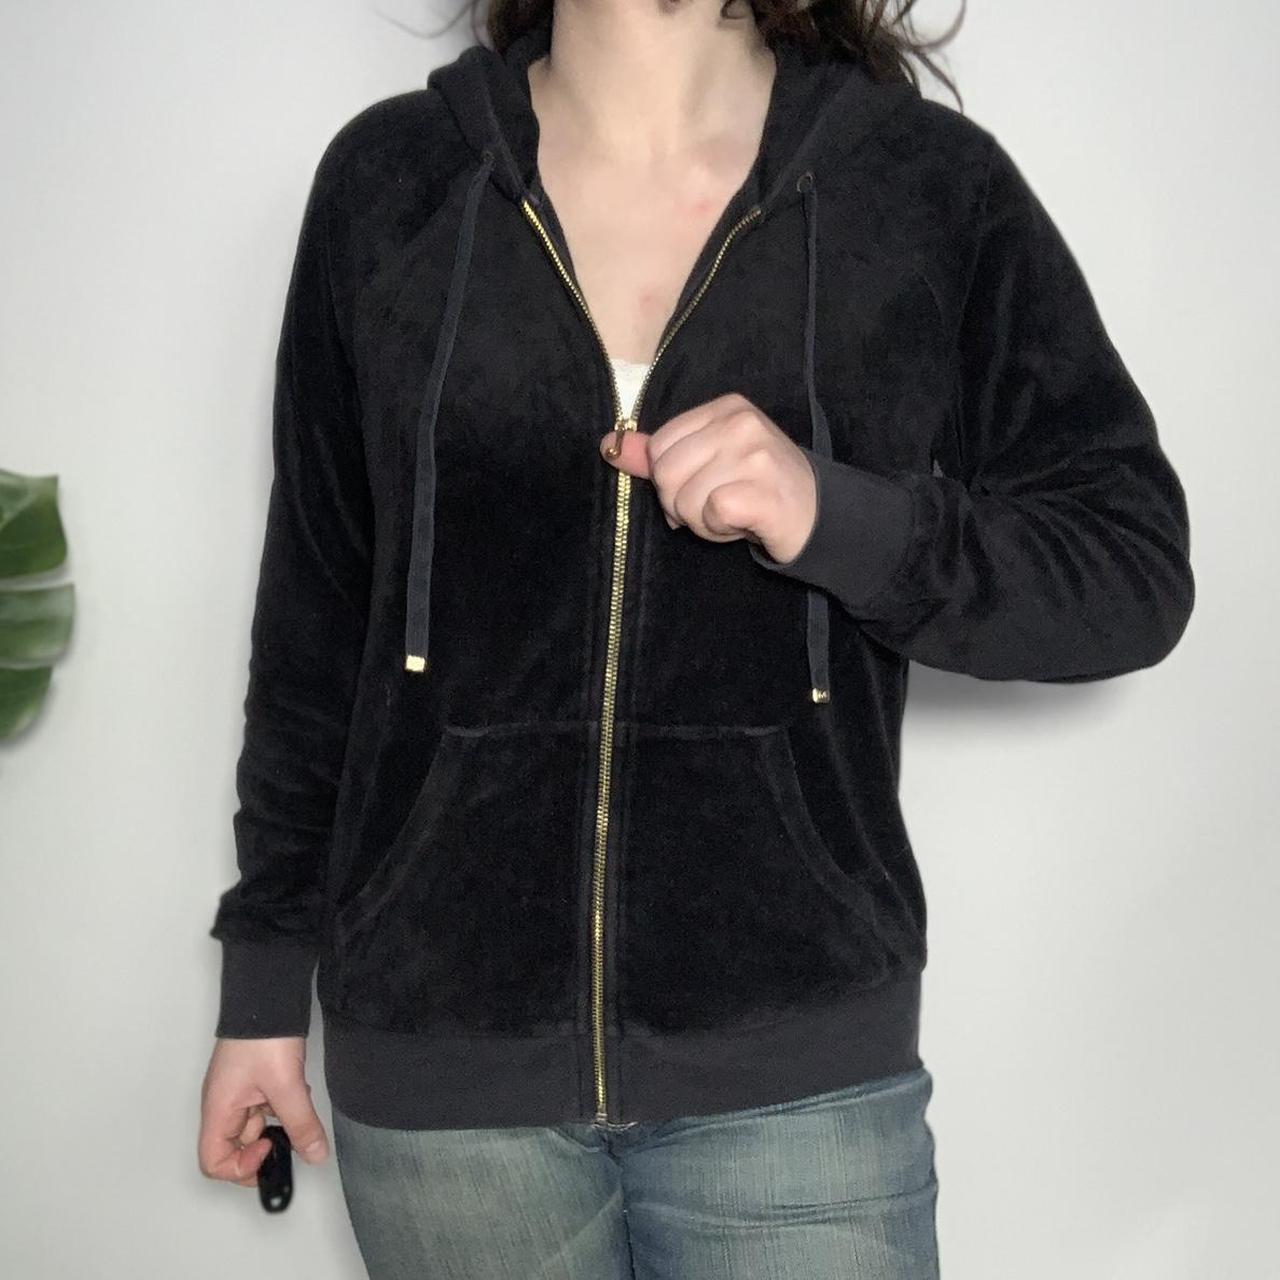 Vintage y2k Juicy Couture black velour zip up hoodie